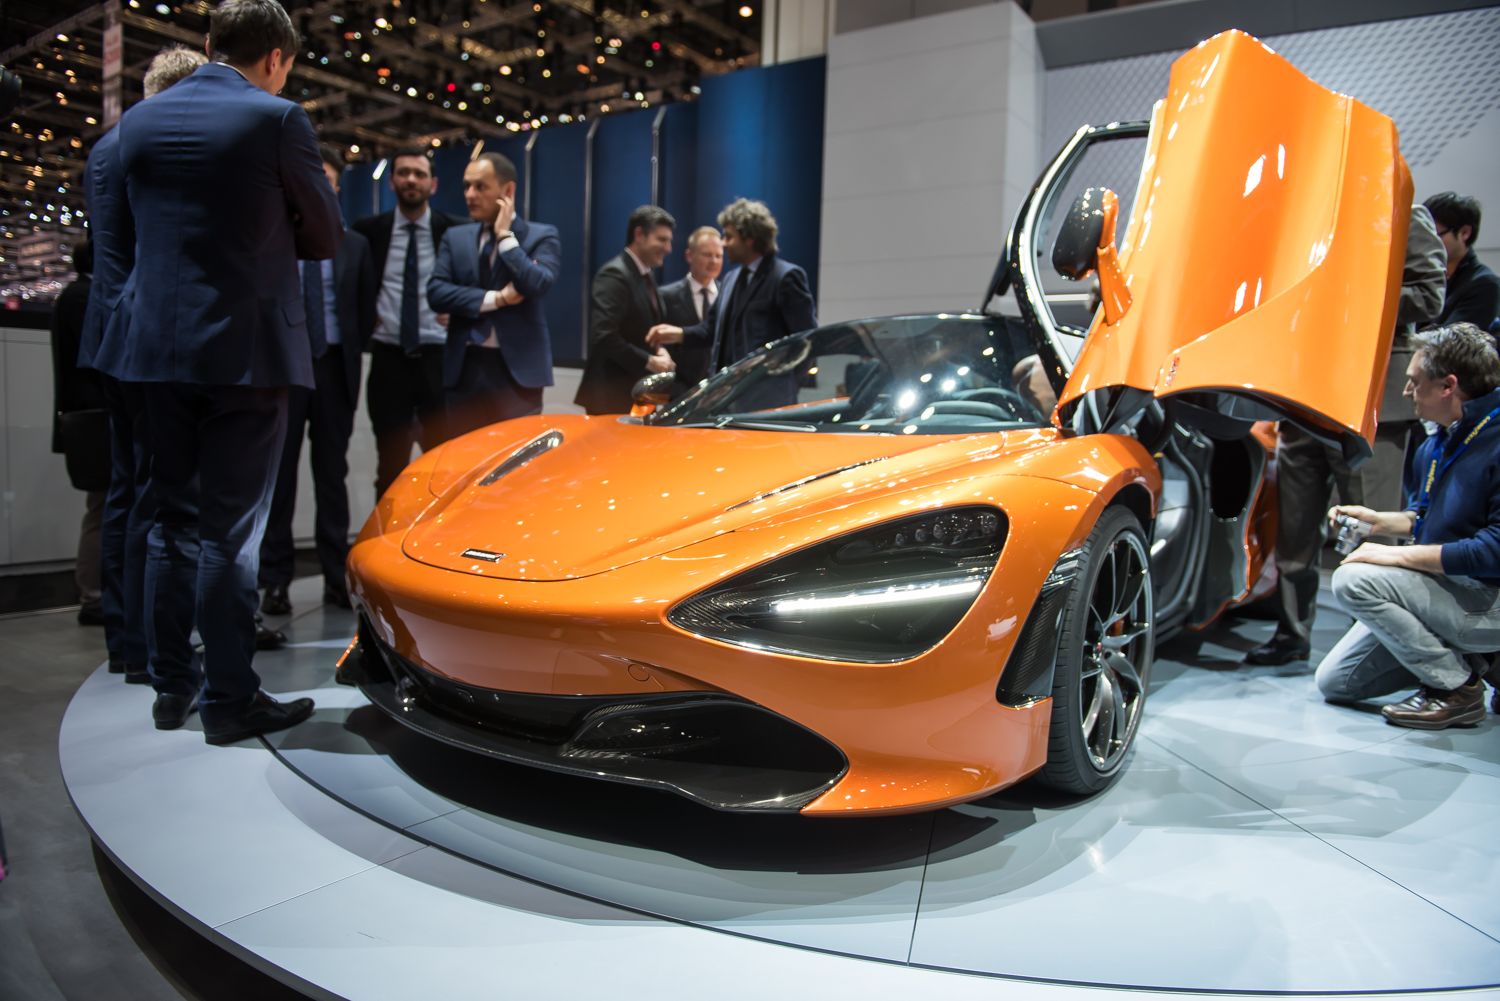 2018 McLaren 720S